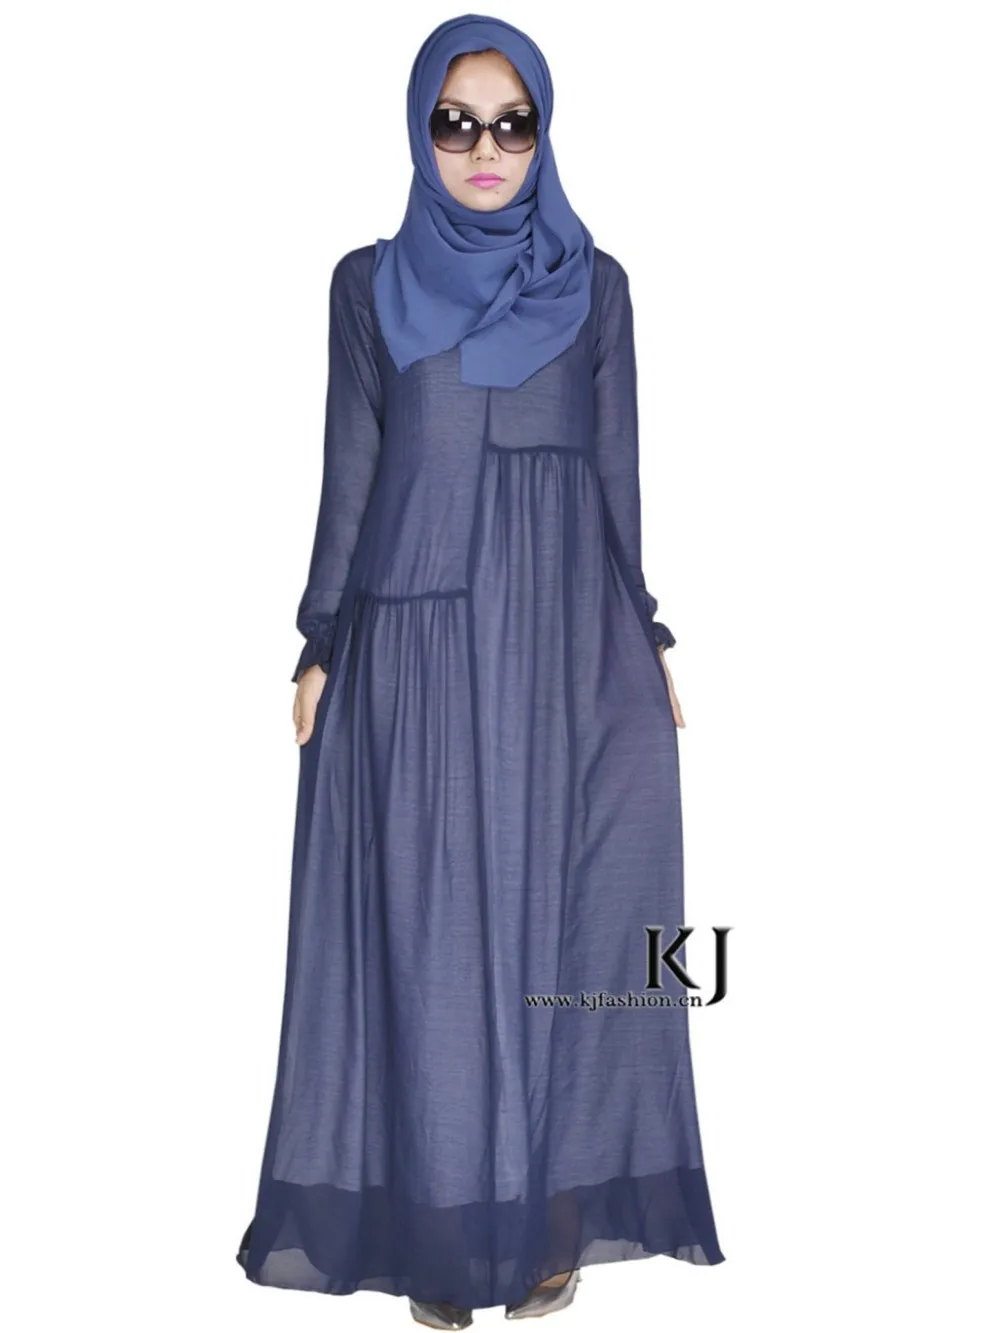 Мусульманское платье макси с длинным рукавом djellaba Высокое качество шелк Дубай халат Арабская традиционная одежда для женщин burqa KJ 0307